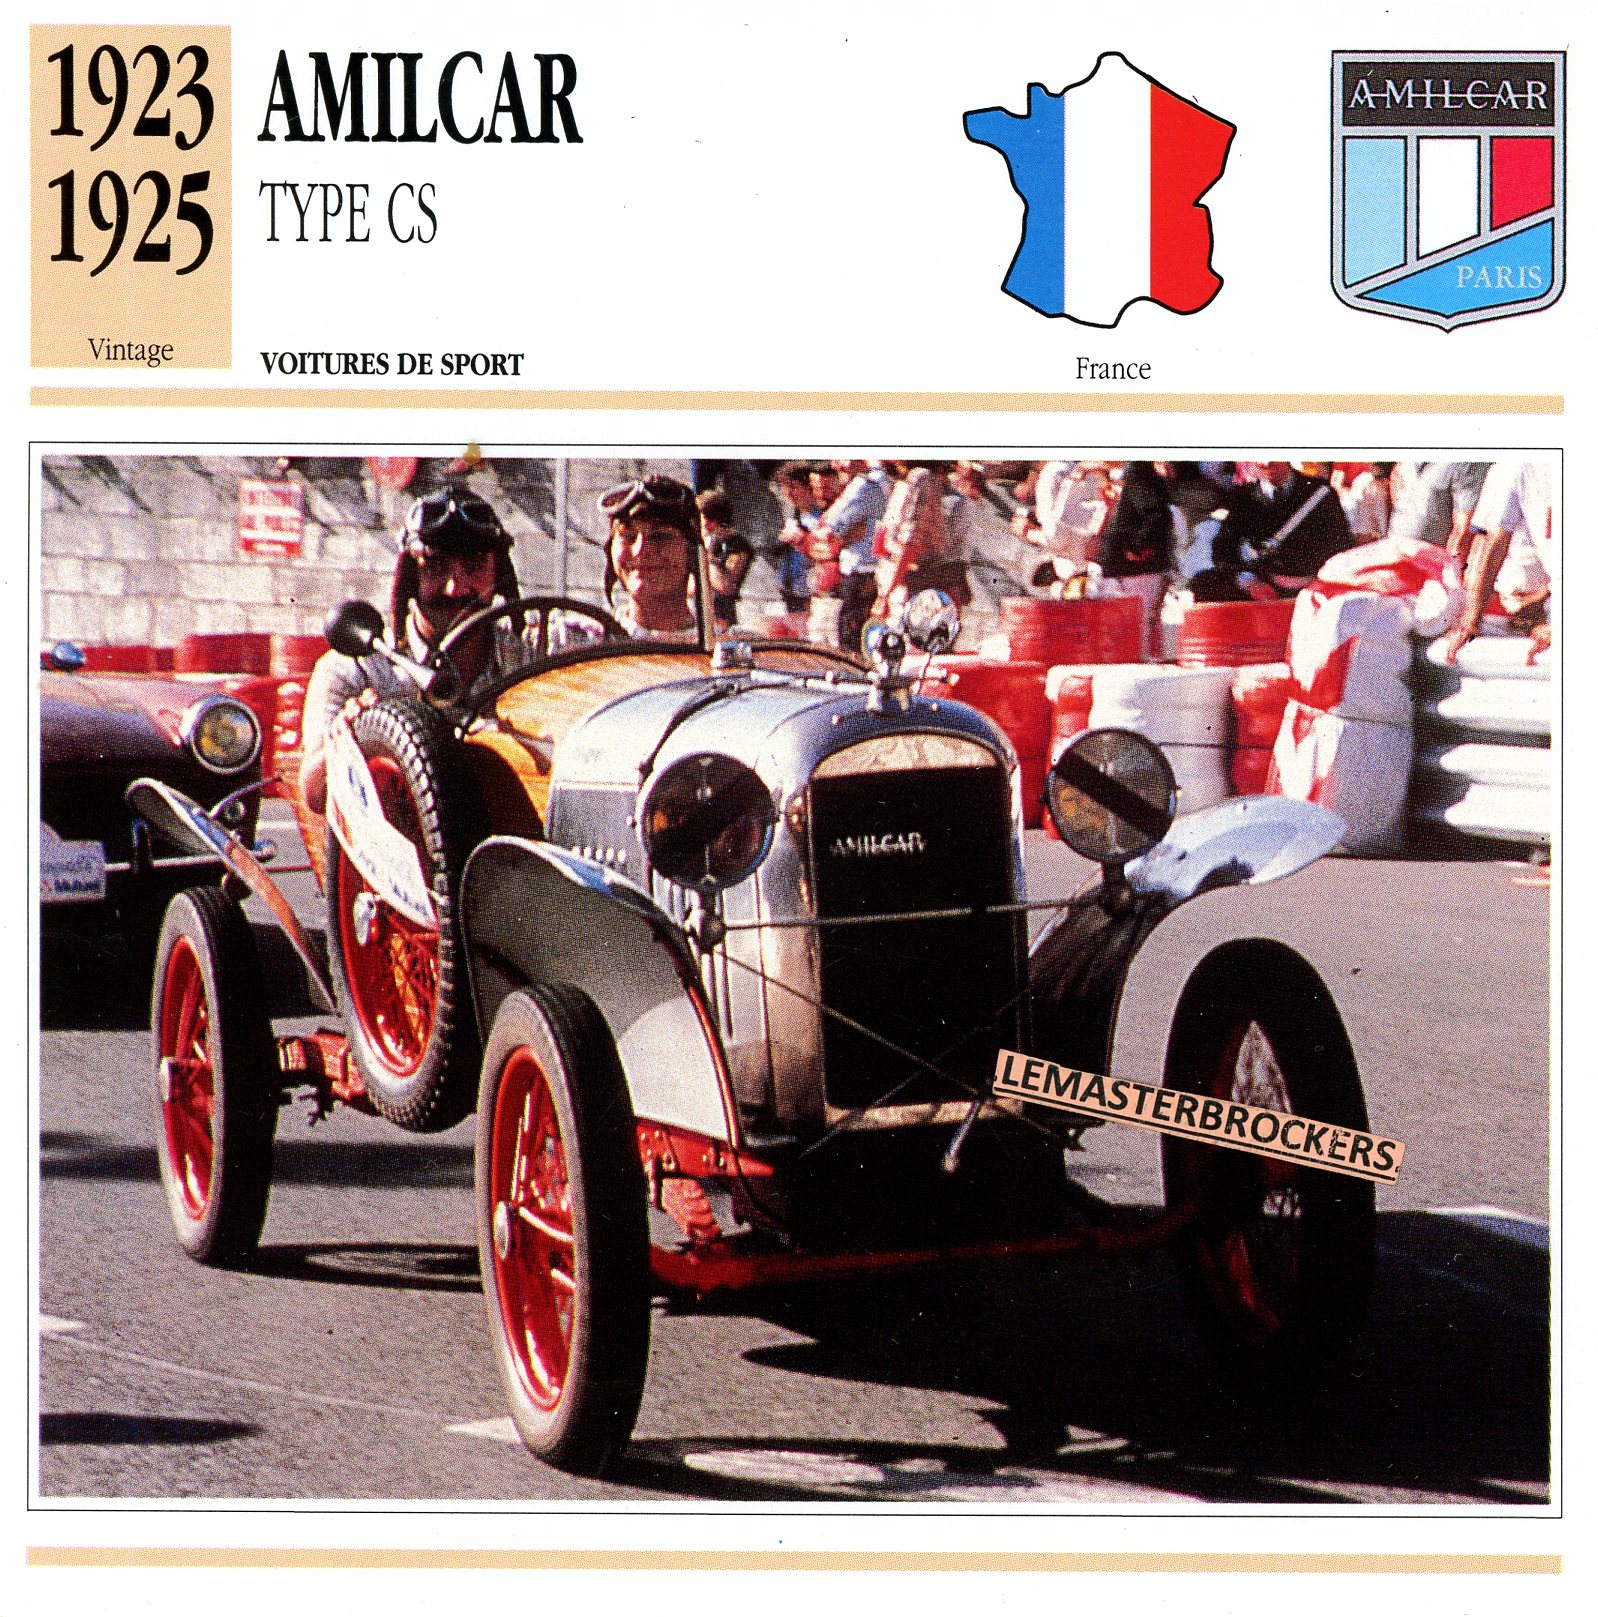 AMILCAR-CS-1923-1925-FICHE-AUTO-LEMASTERBROCKERS-ATLAS-ÉDITION